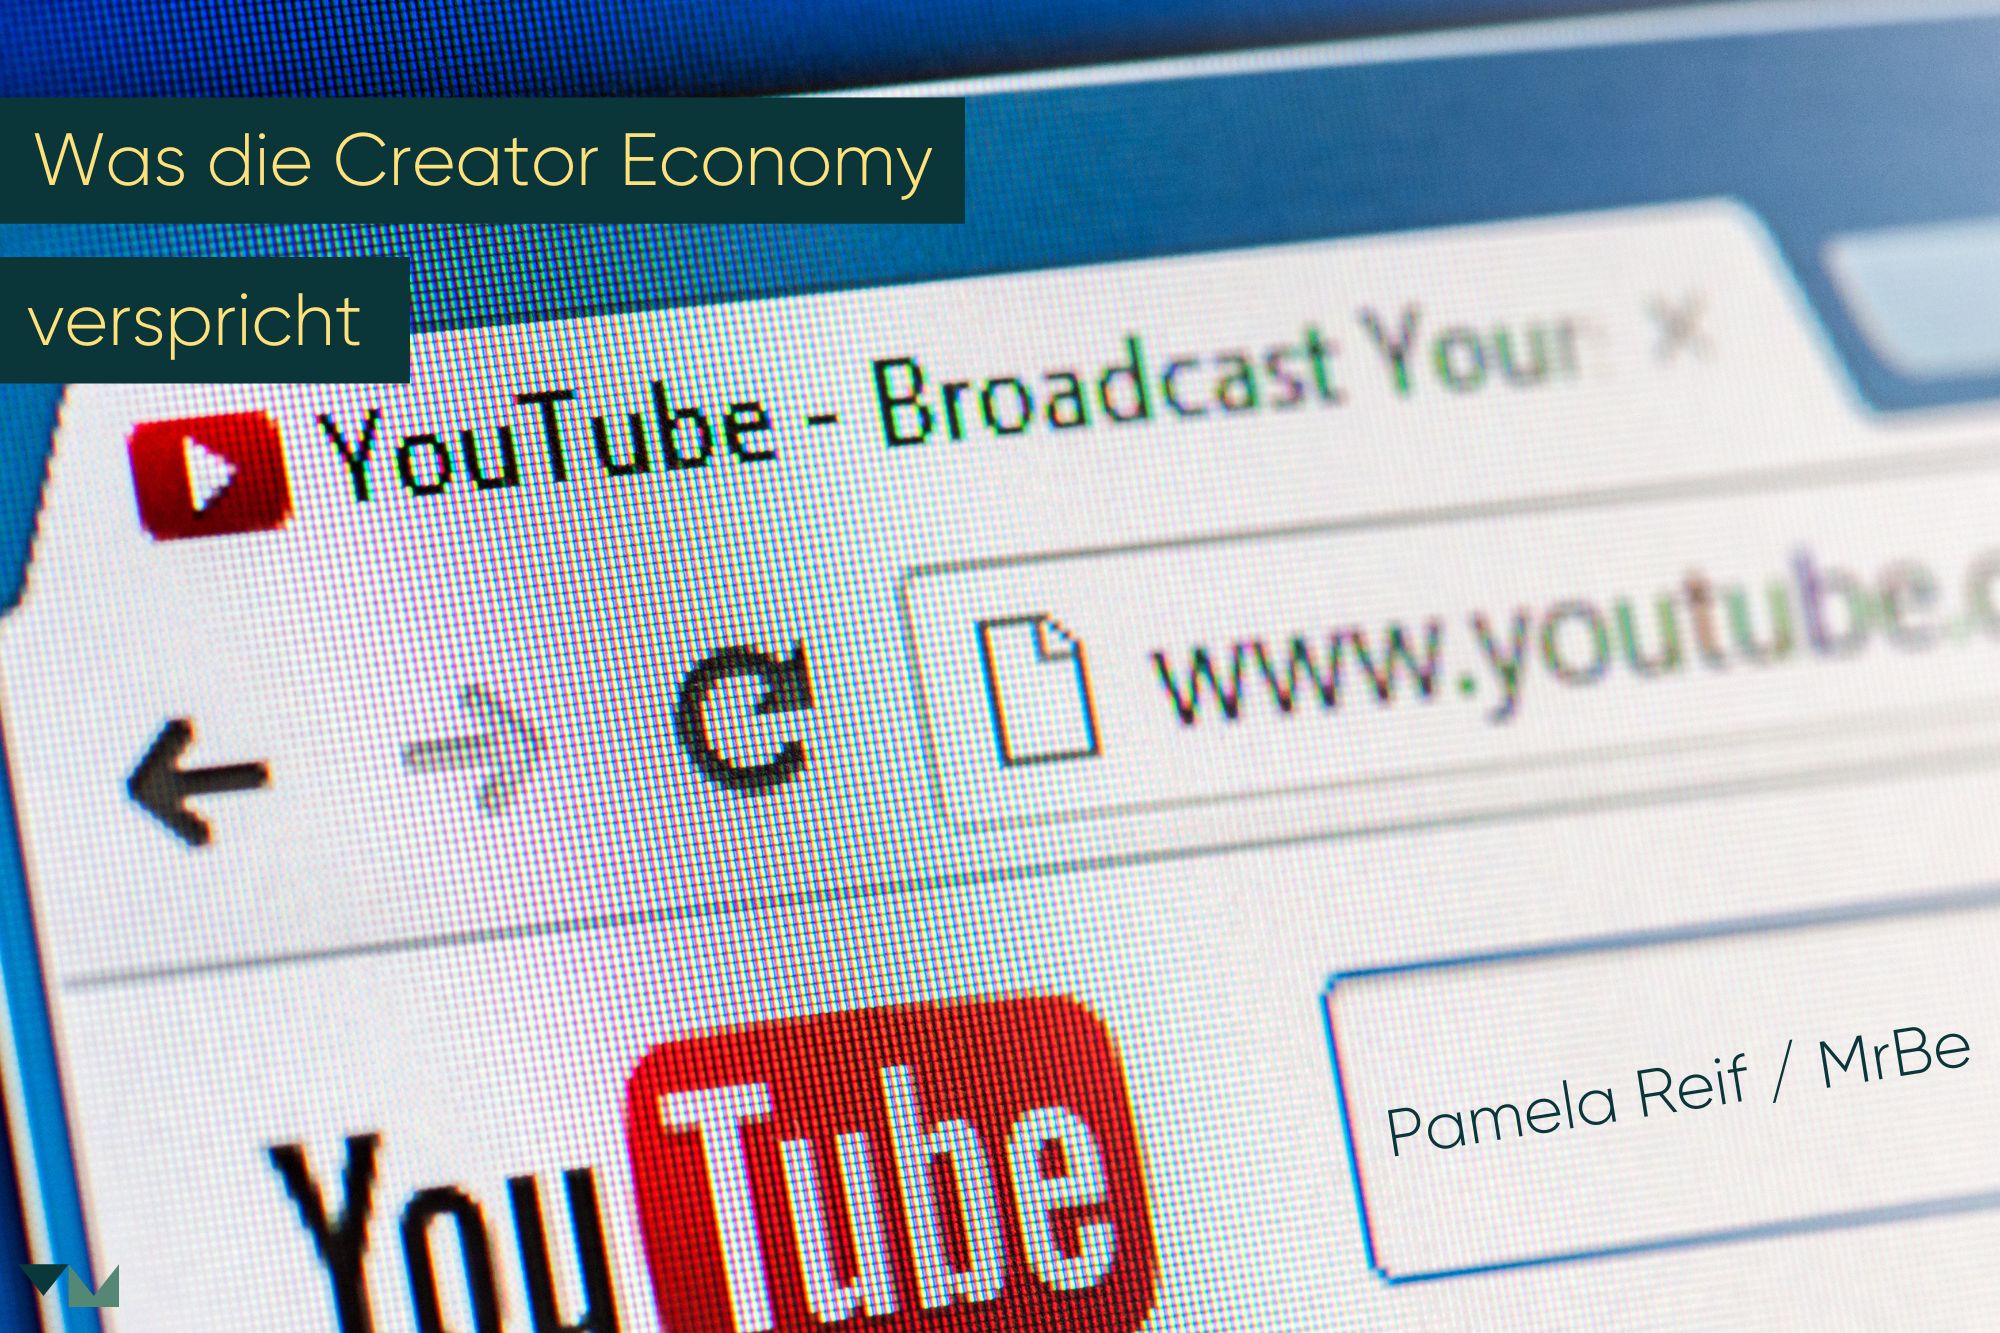 Eine Youtube-Suche nach Pamela Reif. Ein Schriftzug, der sagt "Was die Creator Economy verspricht"